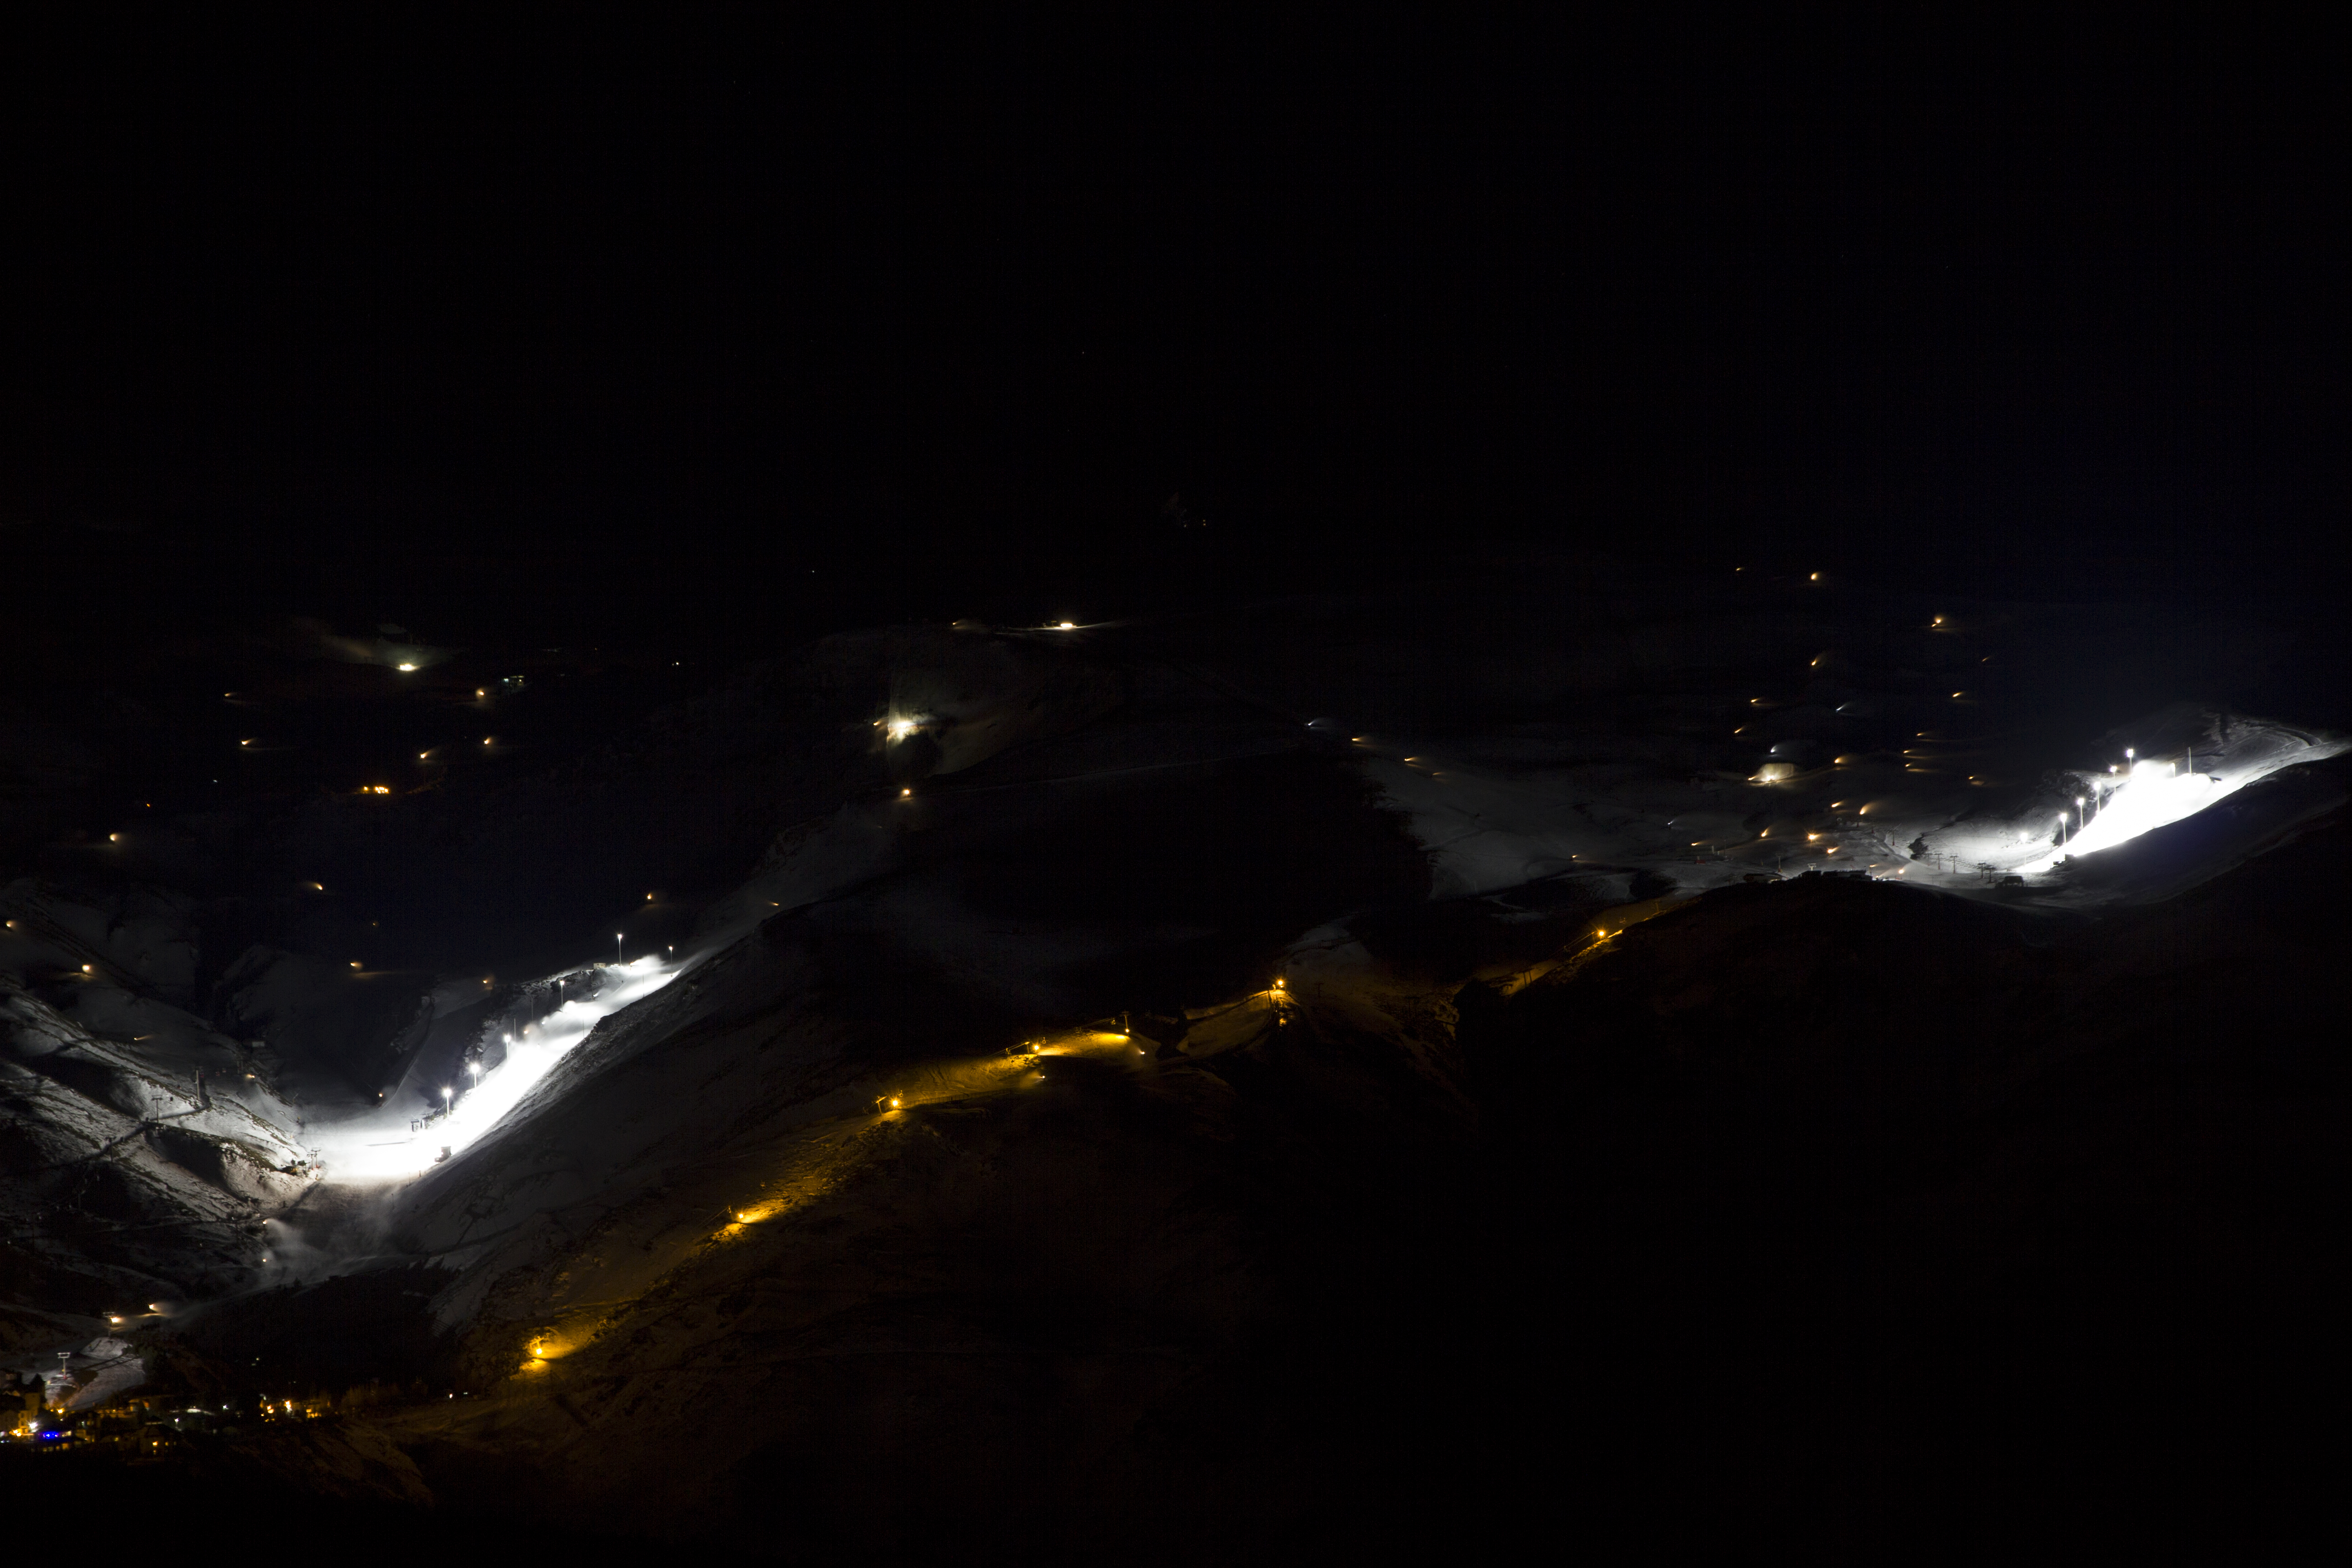 Vista de las pistas de esquí iluminadas antes de llegar al refugio militar.